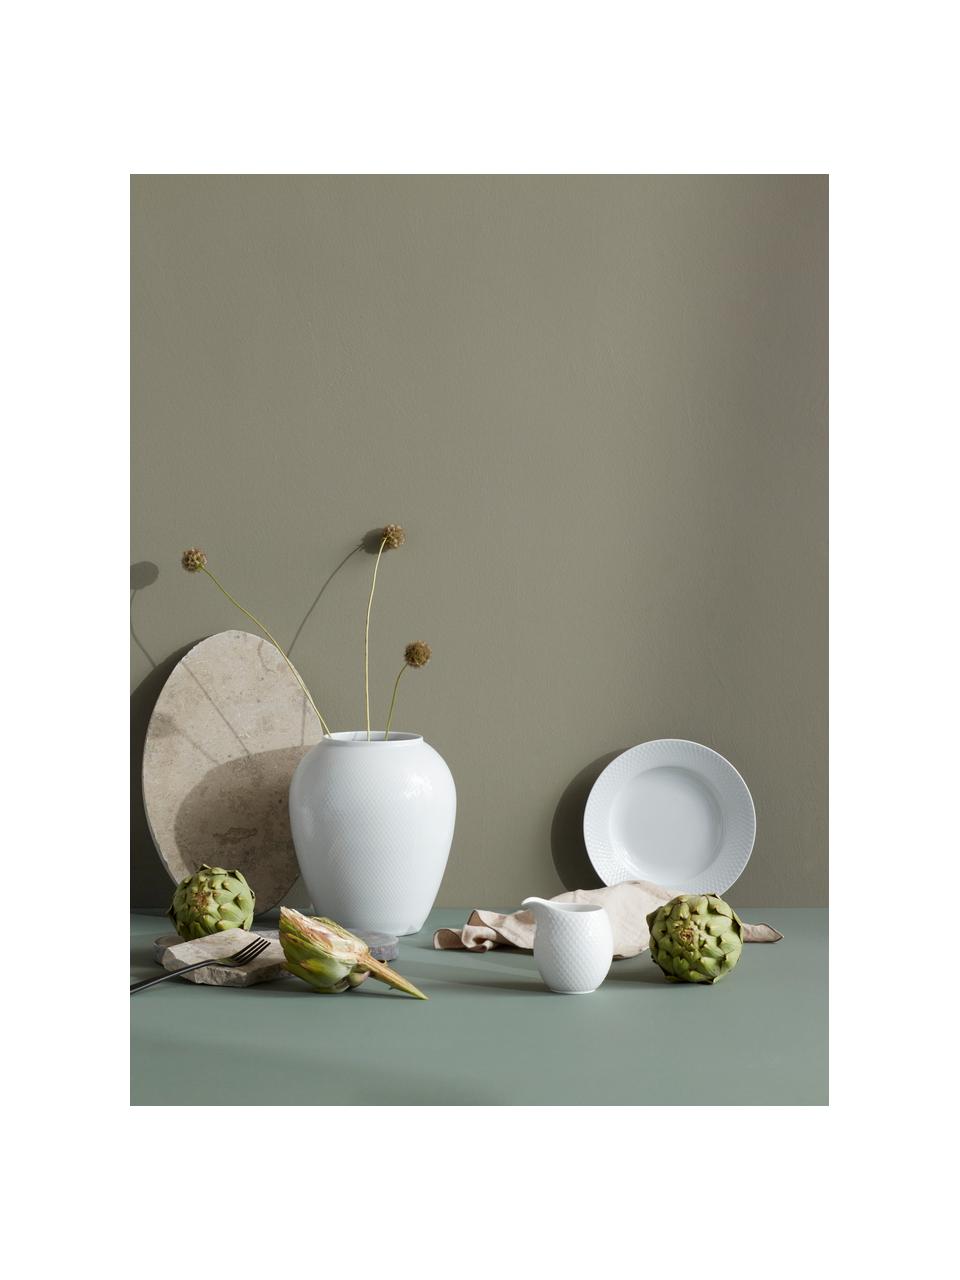 Porcelánové snídaňové talíře Rhombe, 4 ks, Porcelán, Bílá, Ø 23 cm